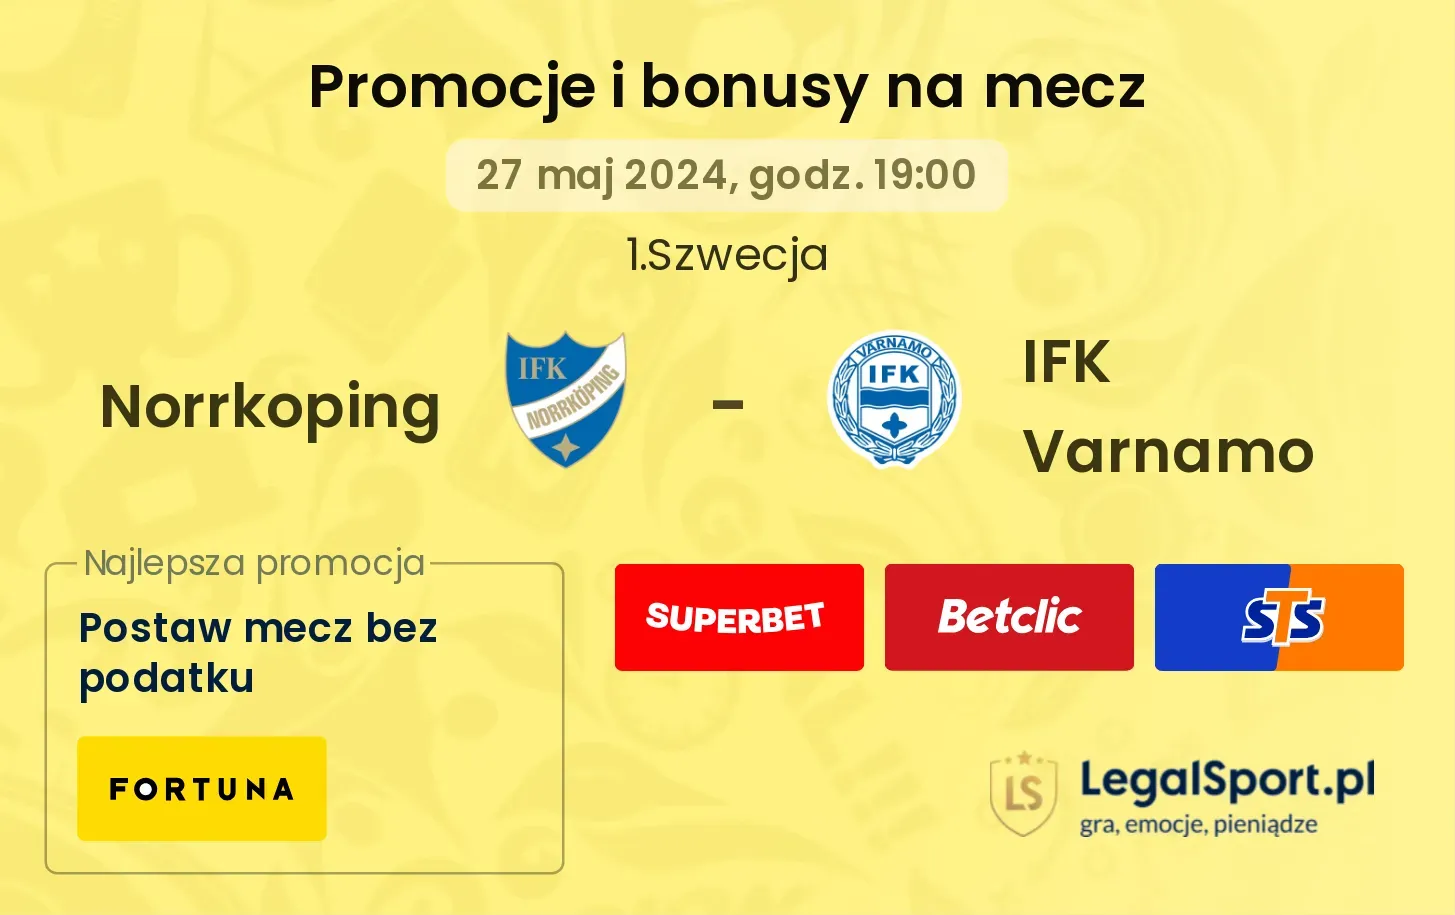 Norrkoping - IFK Varnamo promocje bonusy na mecz